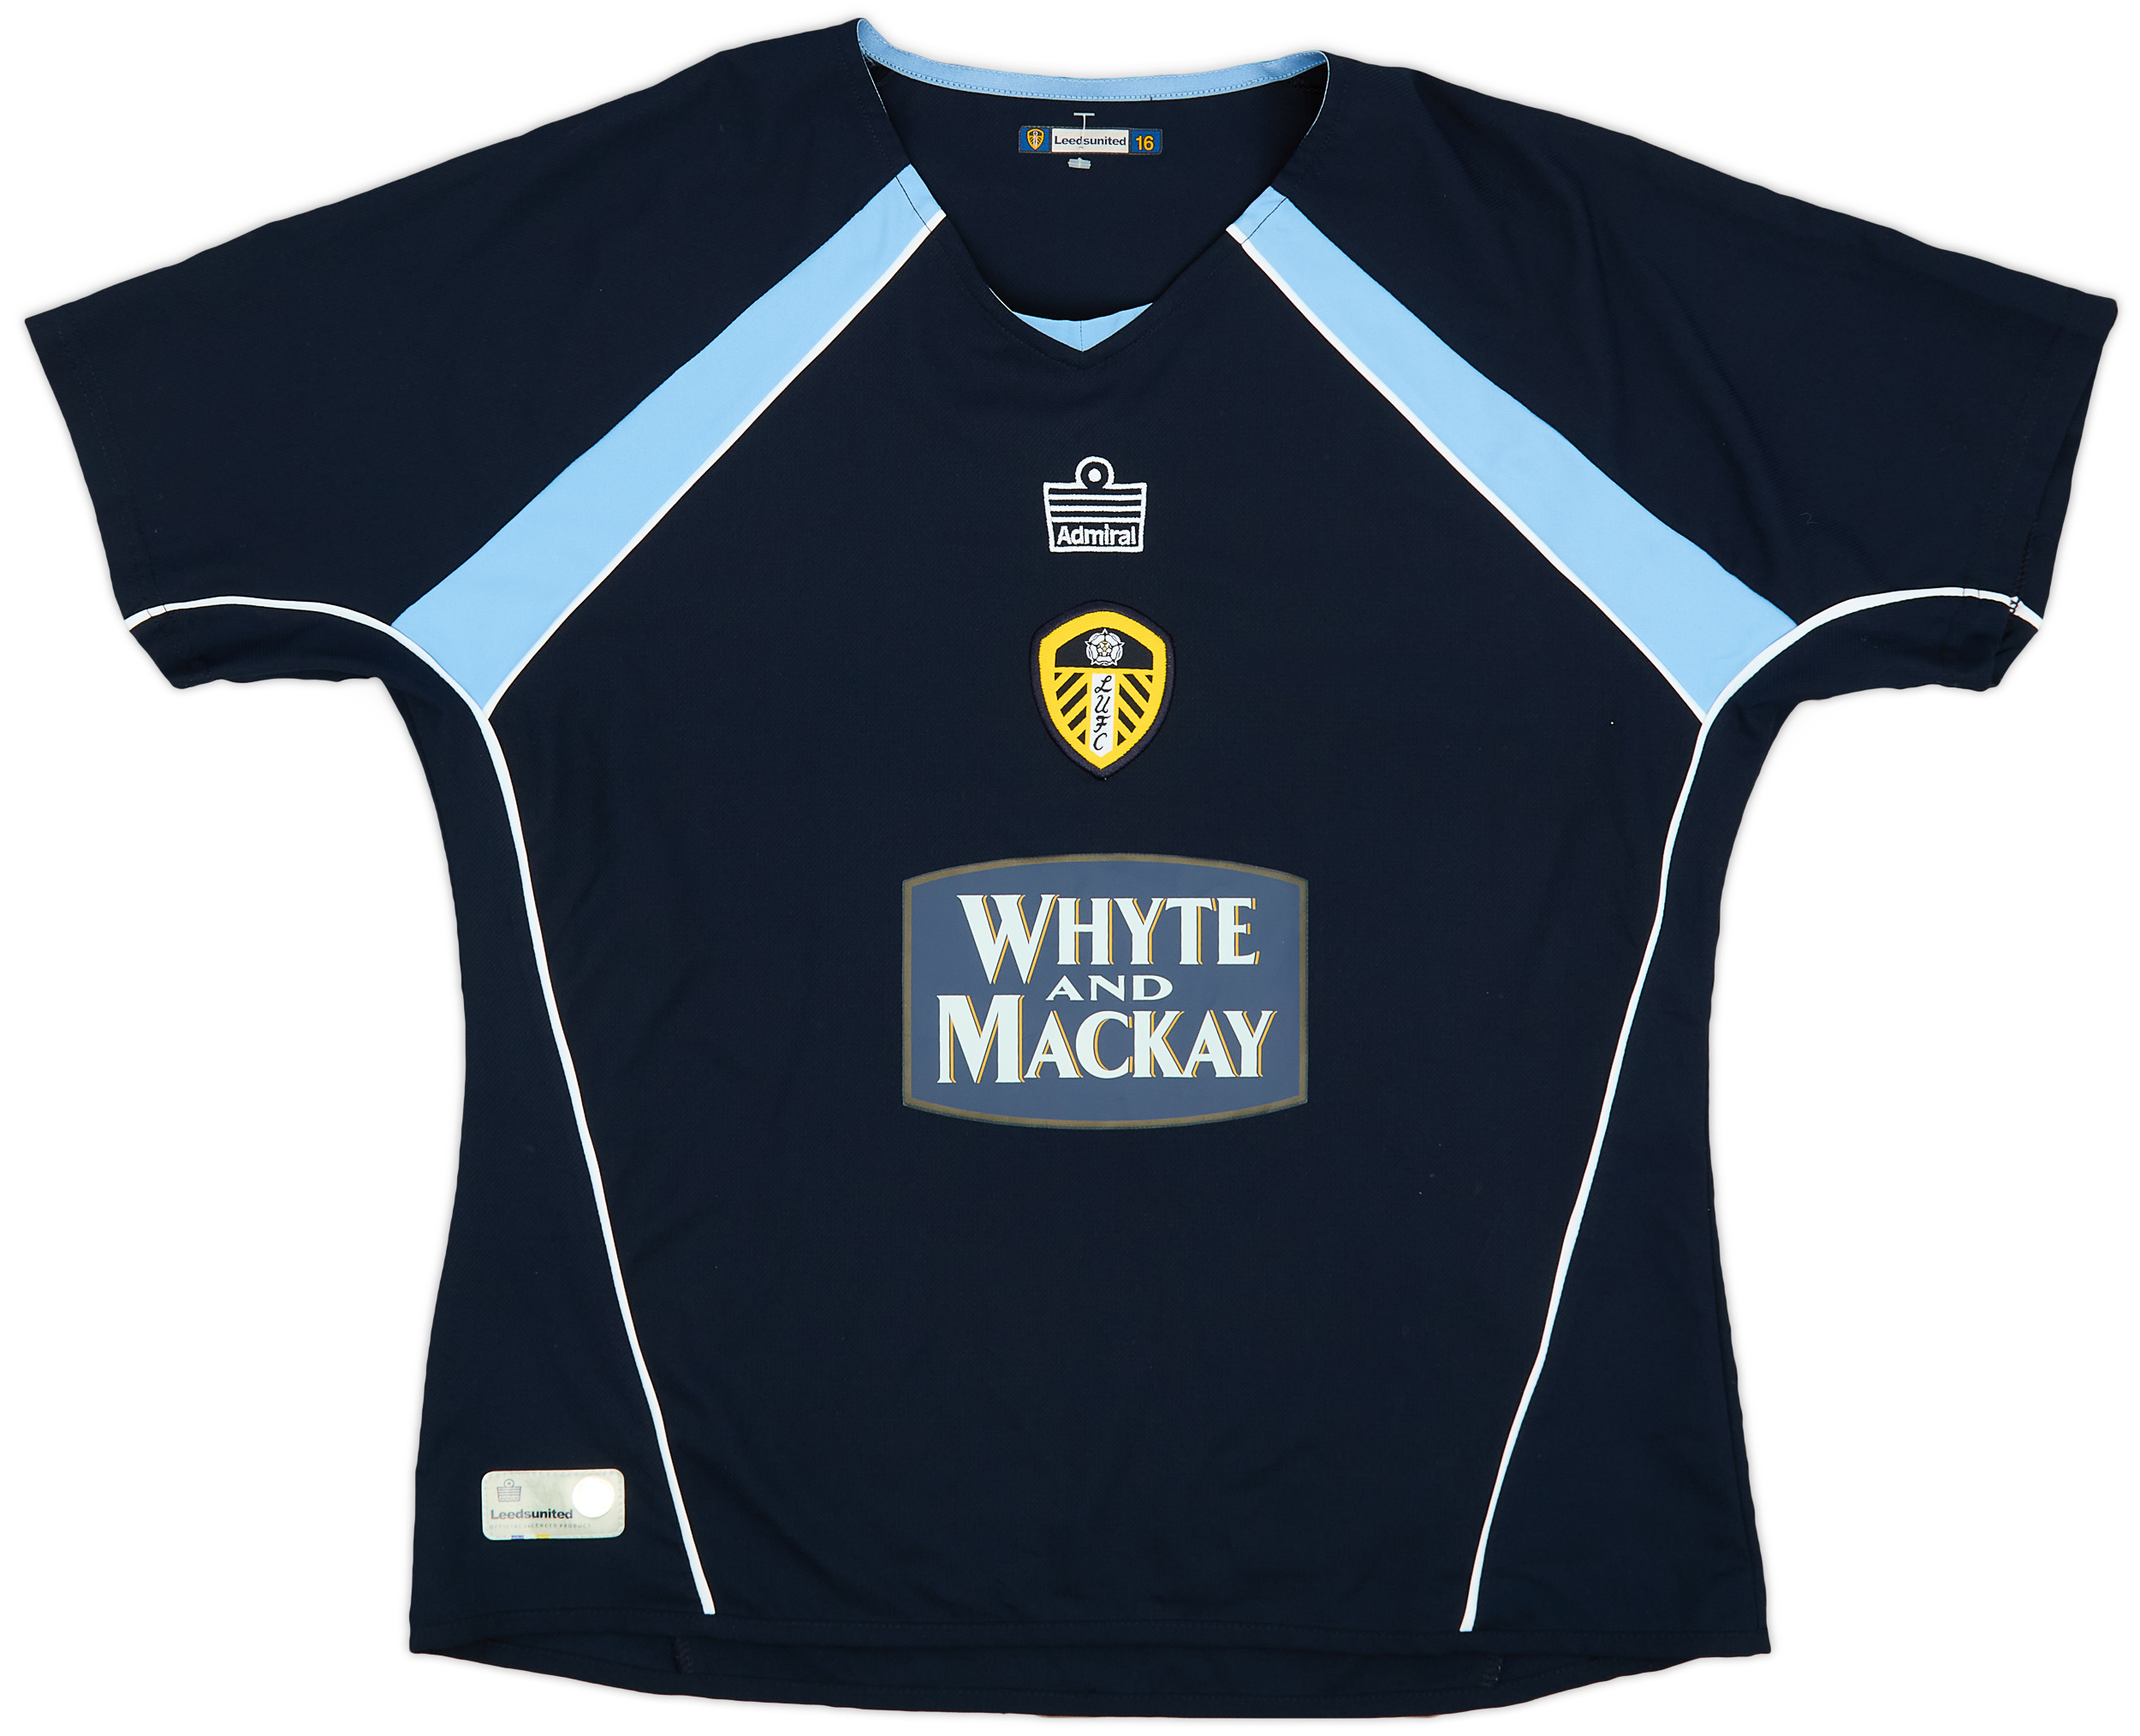 2005-06 Leeds United Away Shirt - 9/10 - (Women's )